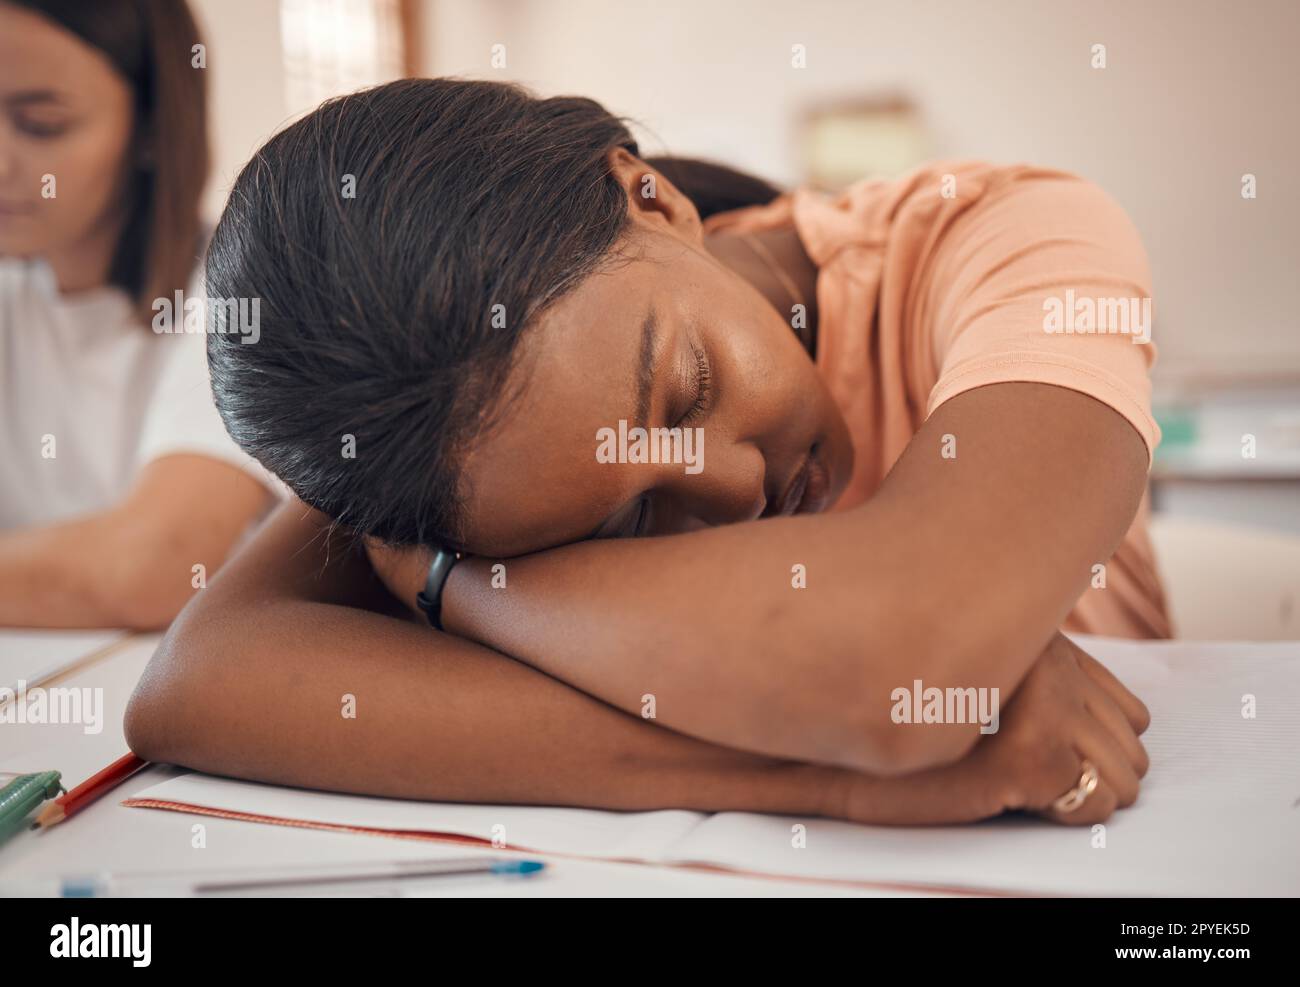 Mädchen, Teenager oder Klassenzimmer schlafen in Stress, Depression oder psychische Gesundheit Burnout in der indischen Bildung, Lern- oder Lernschule. Zoom, Ermüdung oder müde Schüler, die auf einem Universitätsnotizbuch schlafen Stockfoto